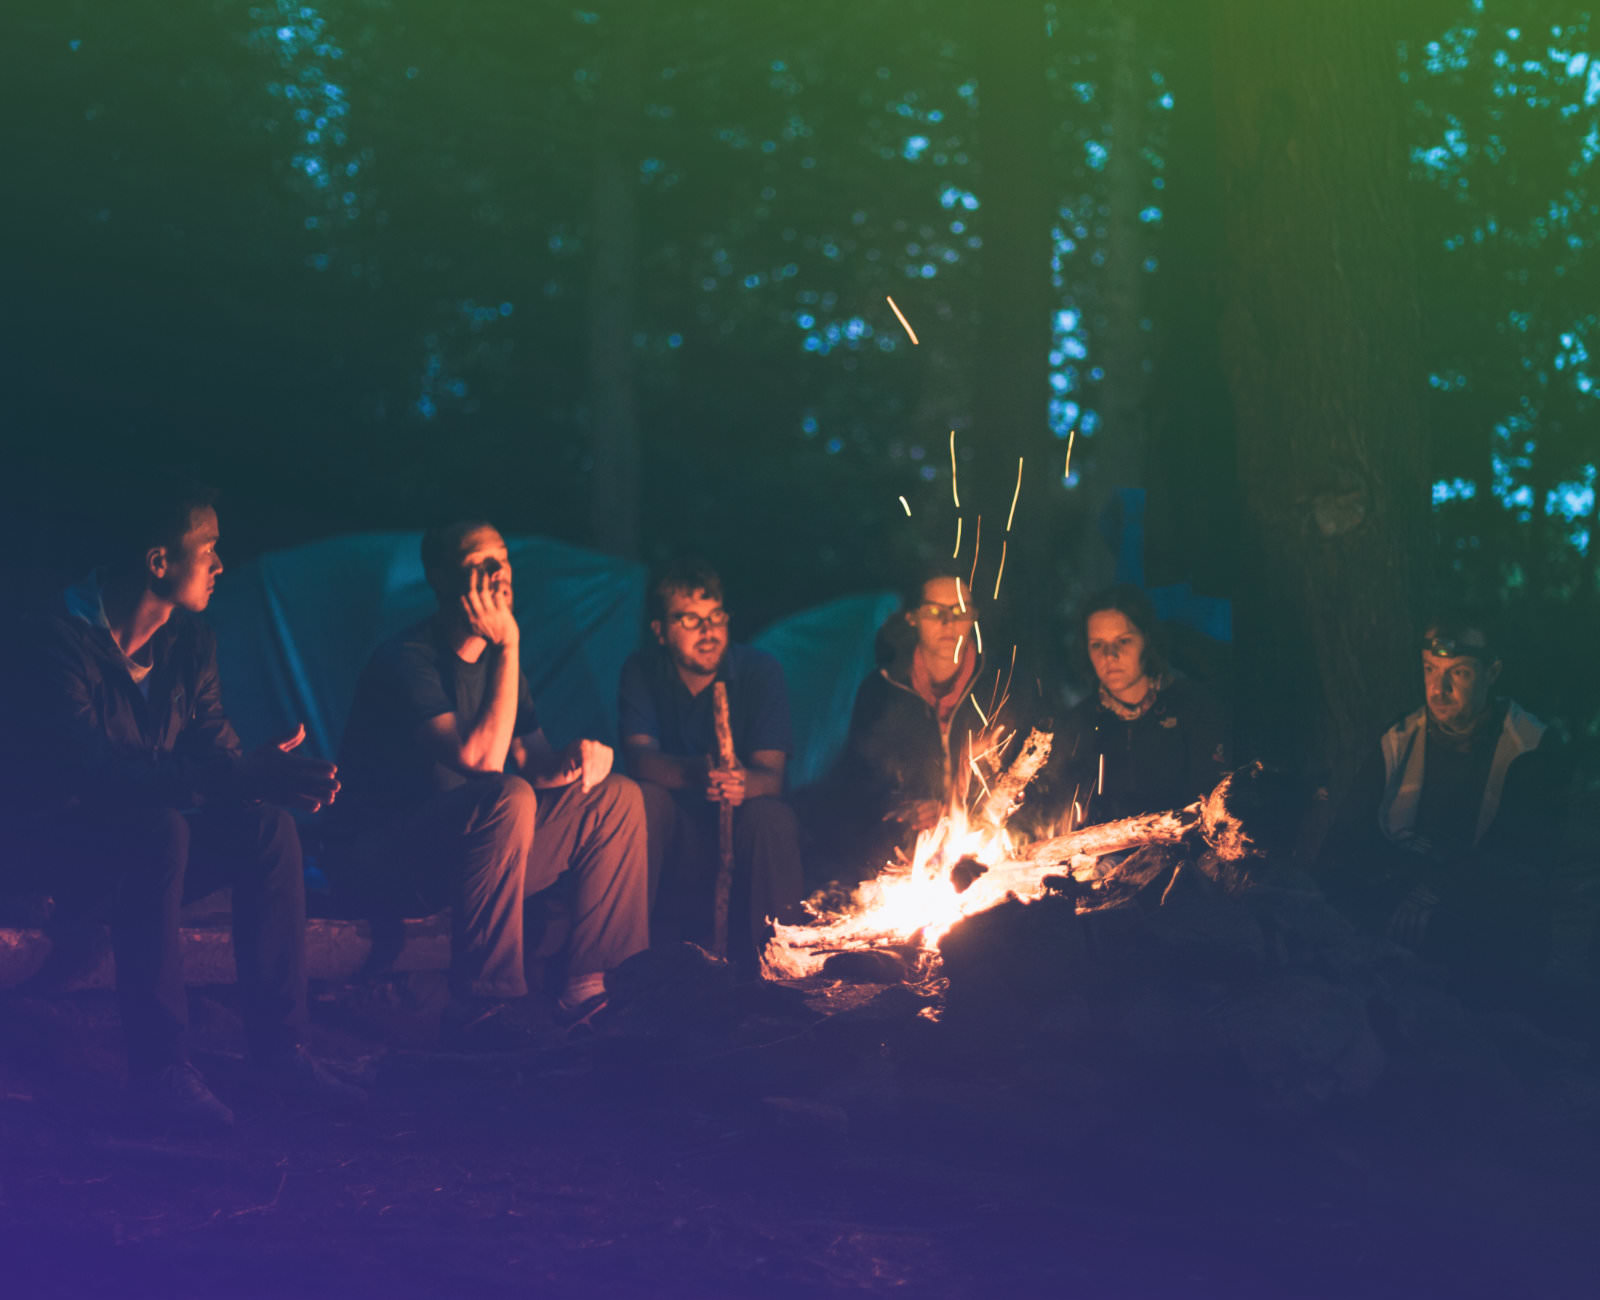 Bild von einer Gruppe von Menschen, die gemeinsam am Lagerfeuer sitzen.